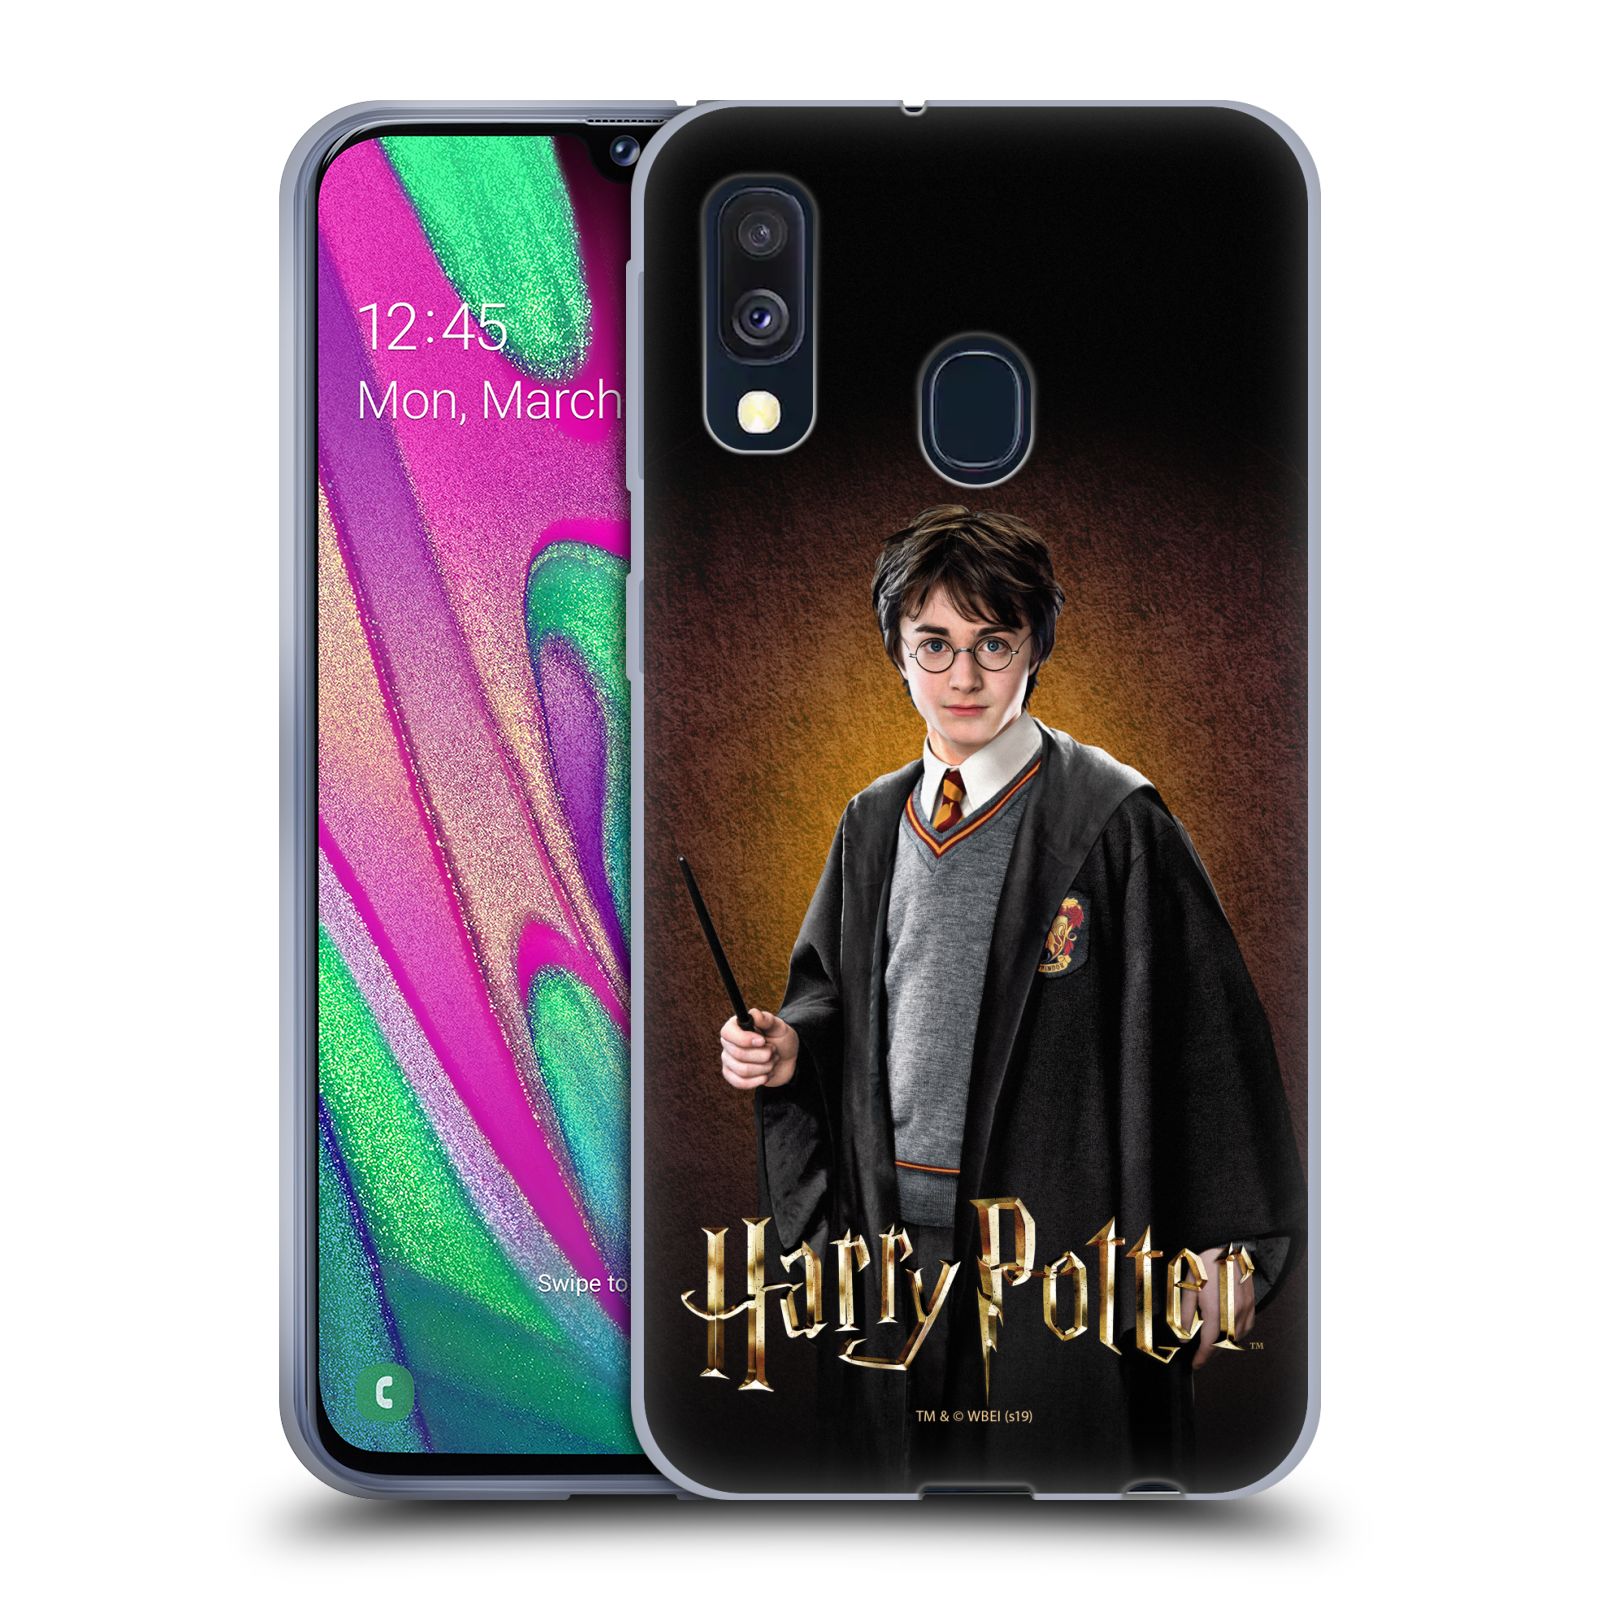 Silikonové pouzdro na mobil Samsung Galaxy A40 - Harry Potter - Malý Harry Potter (Silikonový kryt, obal, pouzdro na mobilní telefon Samsung Galaxy A40 A205F Dual SIM s licencovaným motivem Harry Potter - Malý Harry Potter)